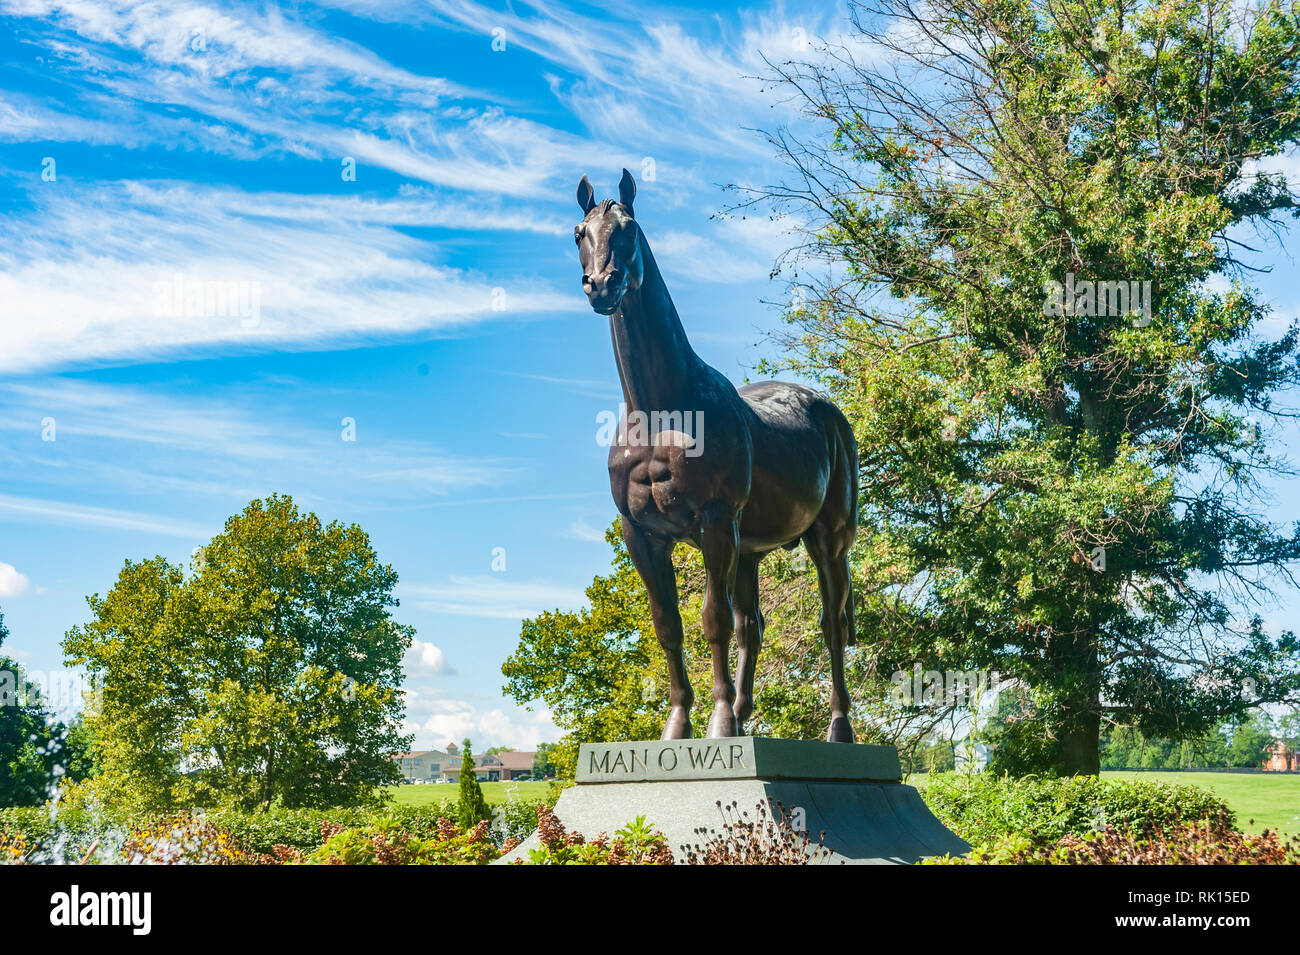 Man O' War statue at the Kentucky Horse Park in Lexington Kentucky Stock Photo